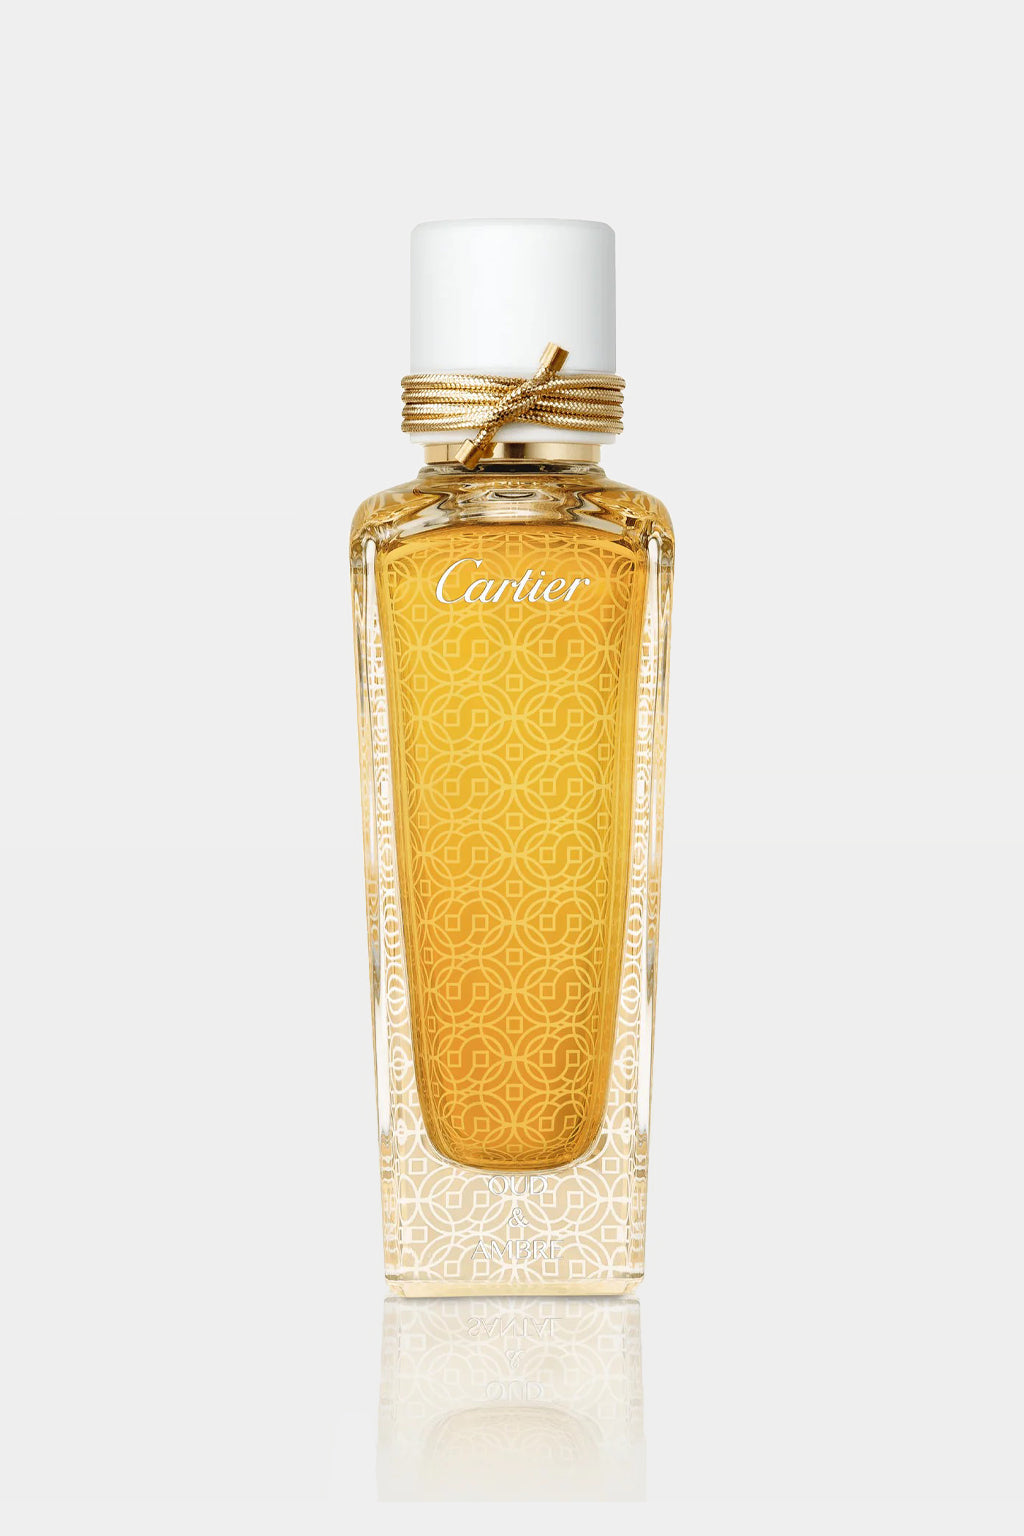 Cartier - Oud & Ambre Les Heures Voyageuses Fragrance 75 Ml